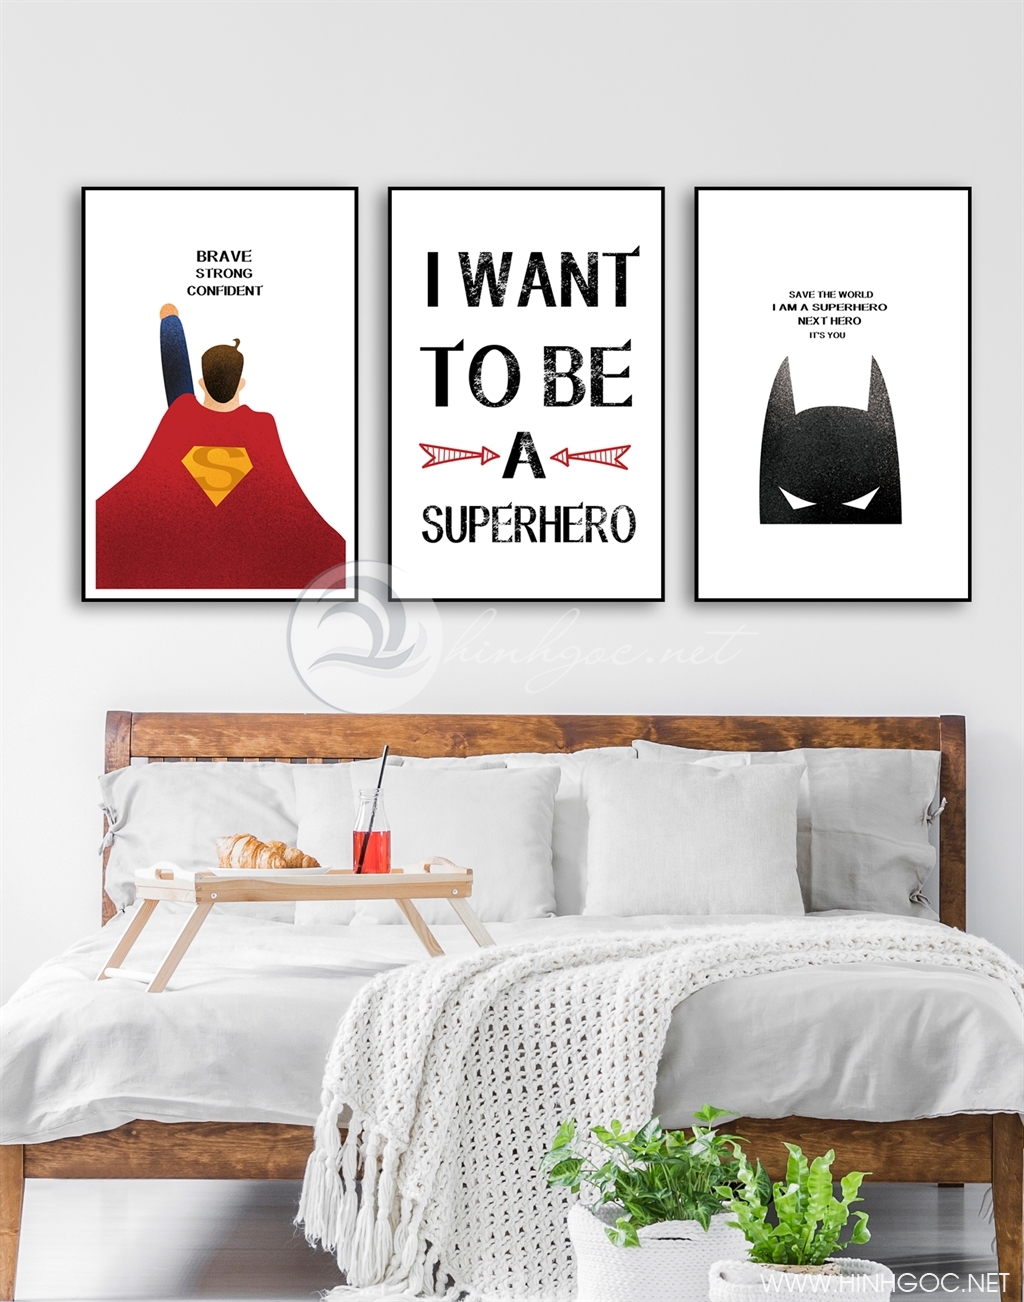 Tranh phòng ngủ cho bé, siêu nhân anh hùng